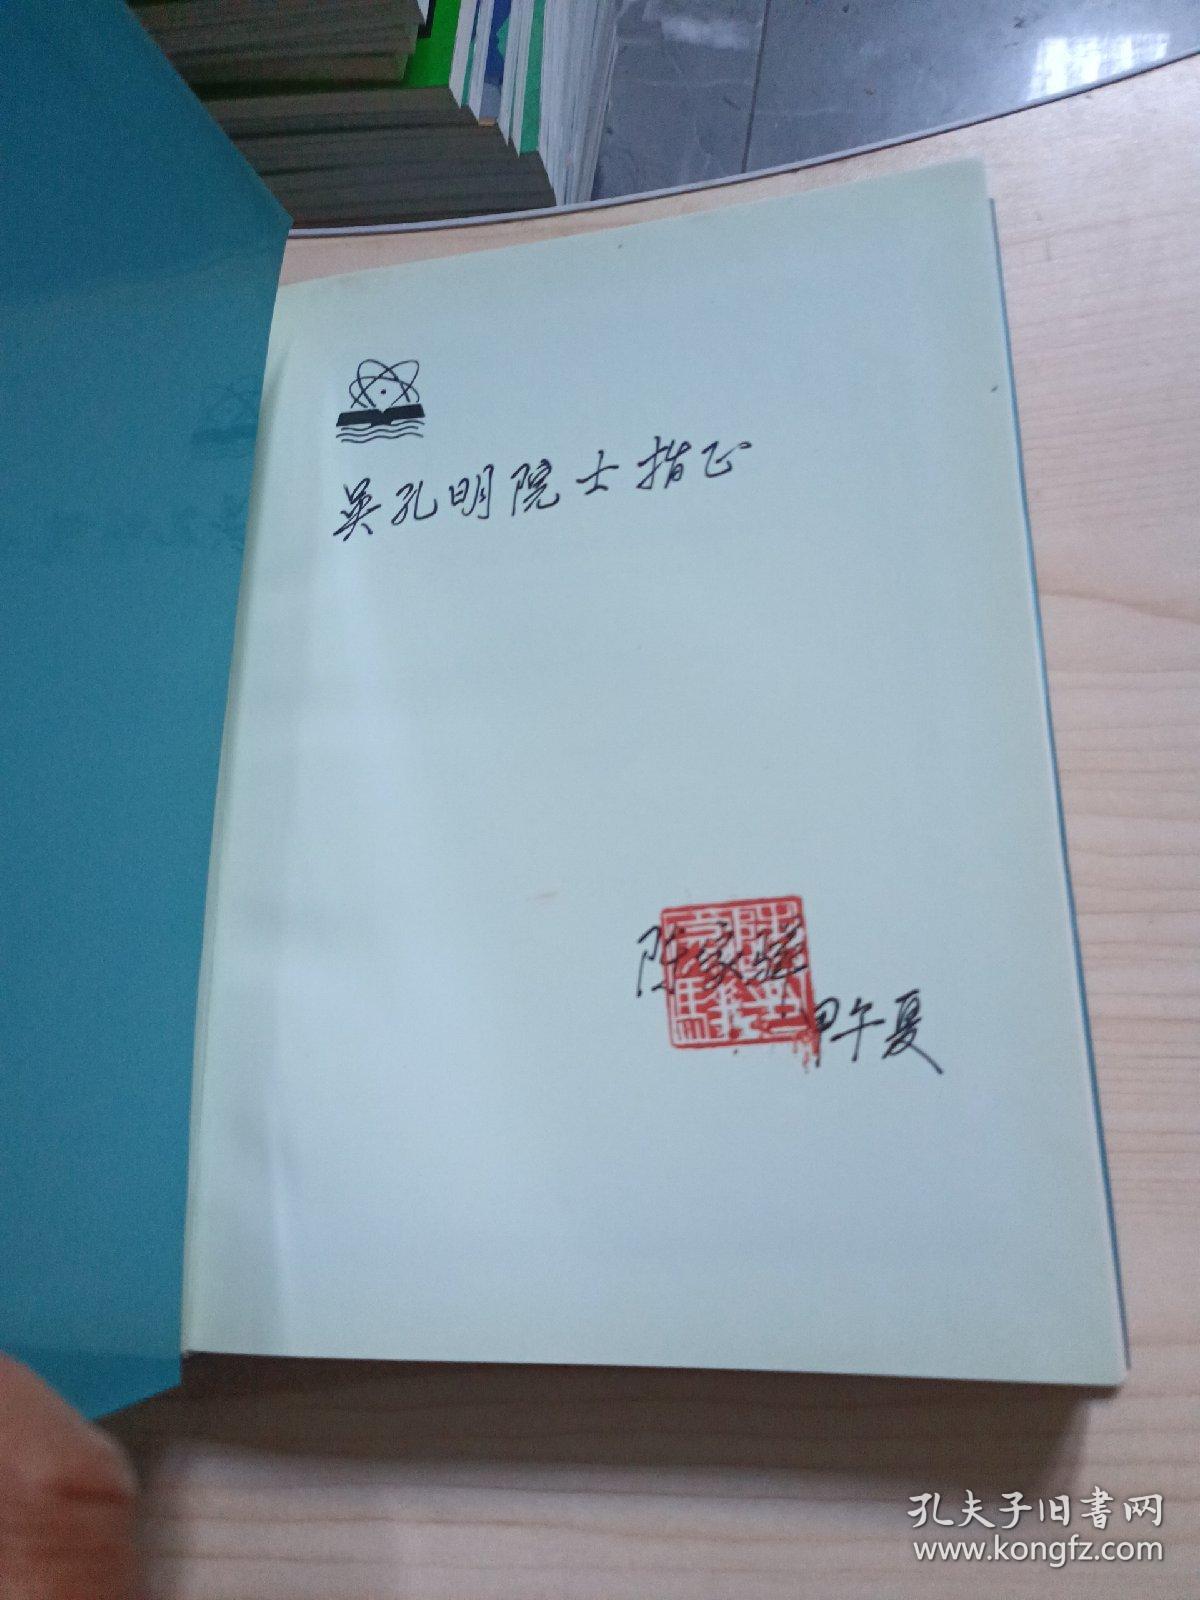 中国小腹茧蜂:膜翅目：茧蜂科有签名，请看图下单